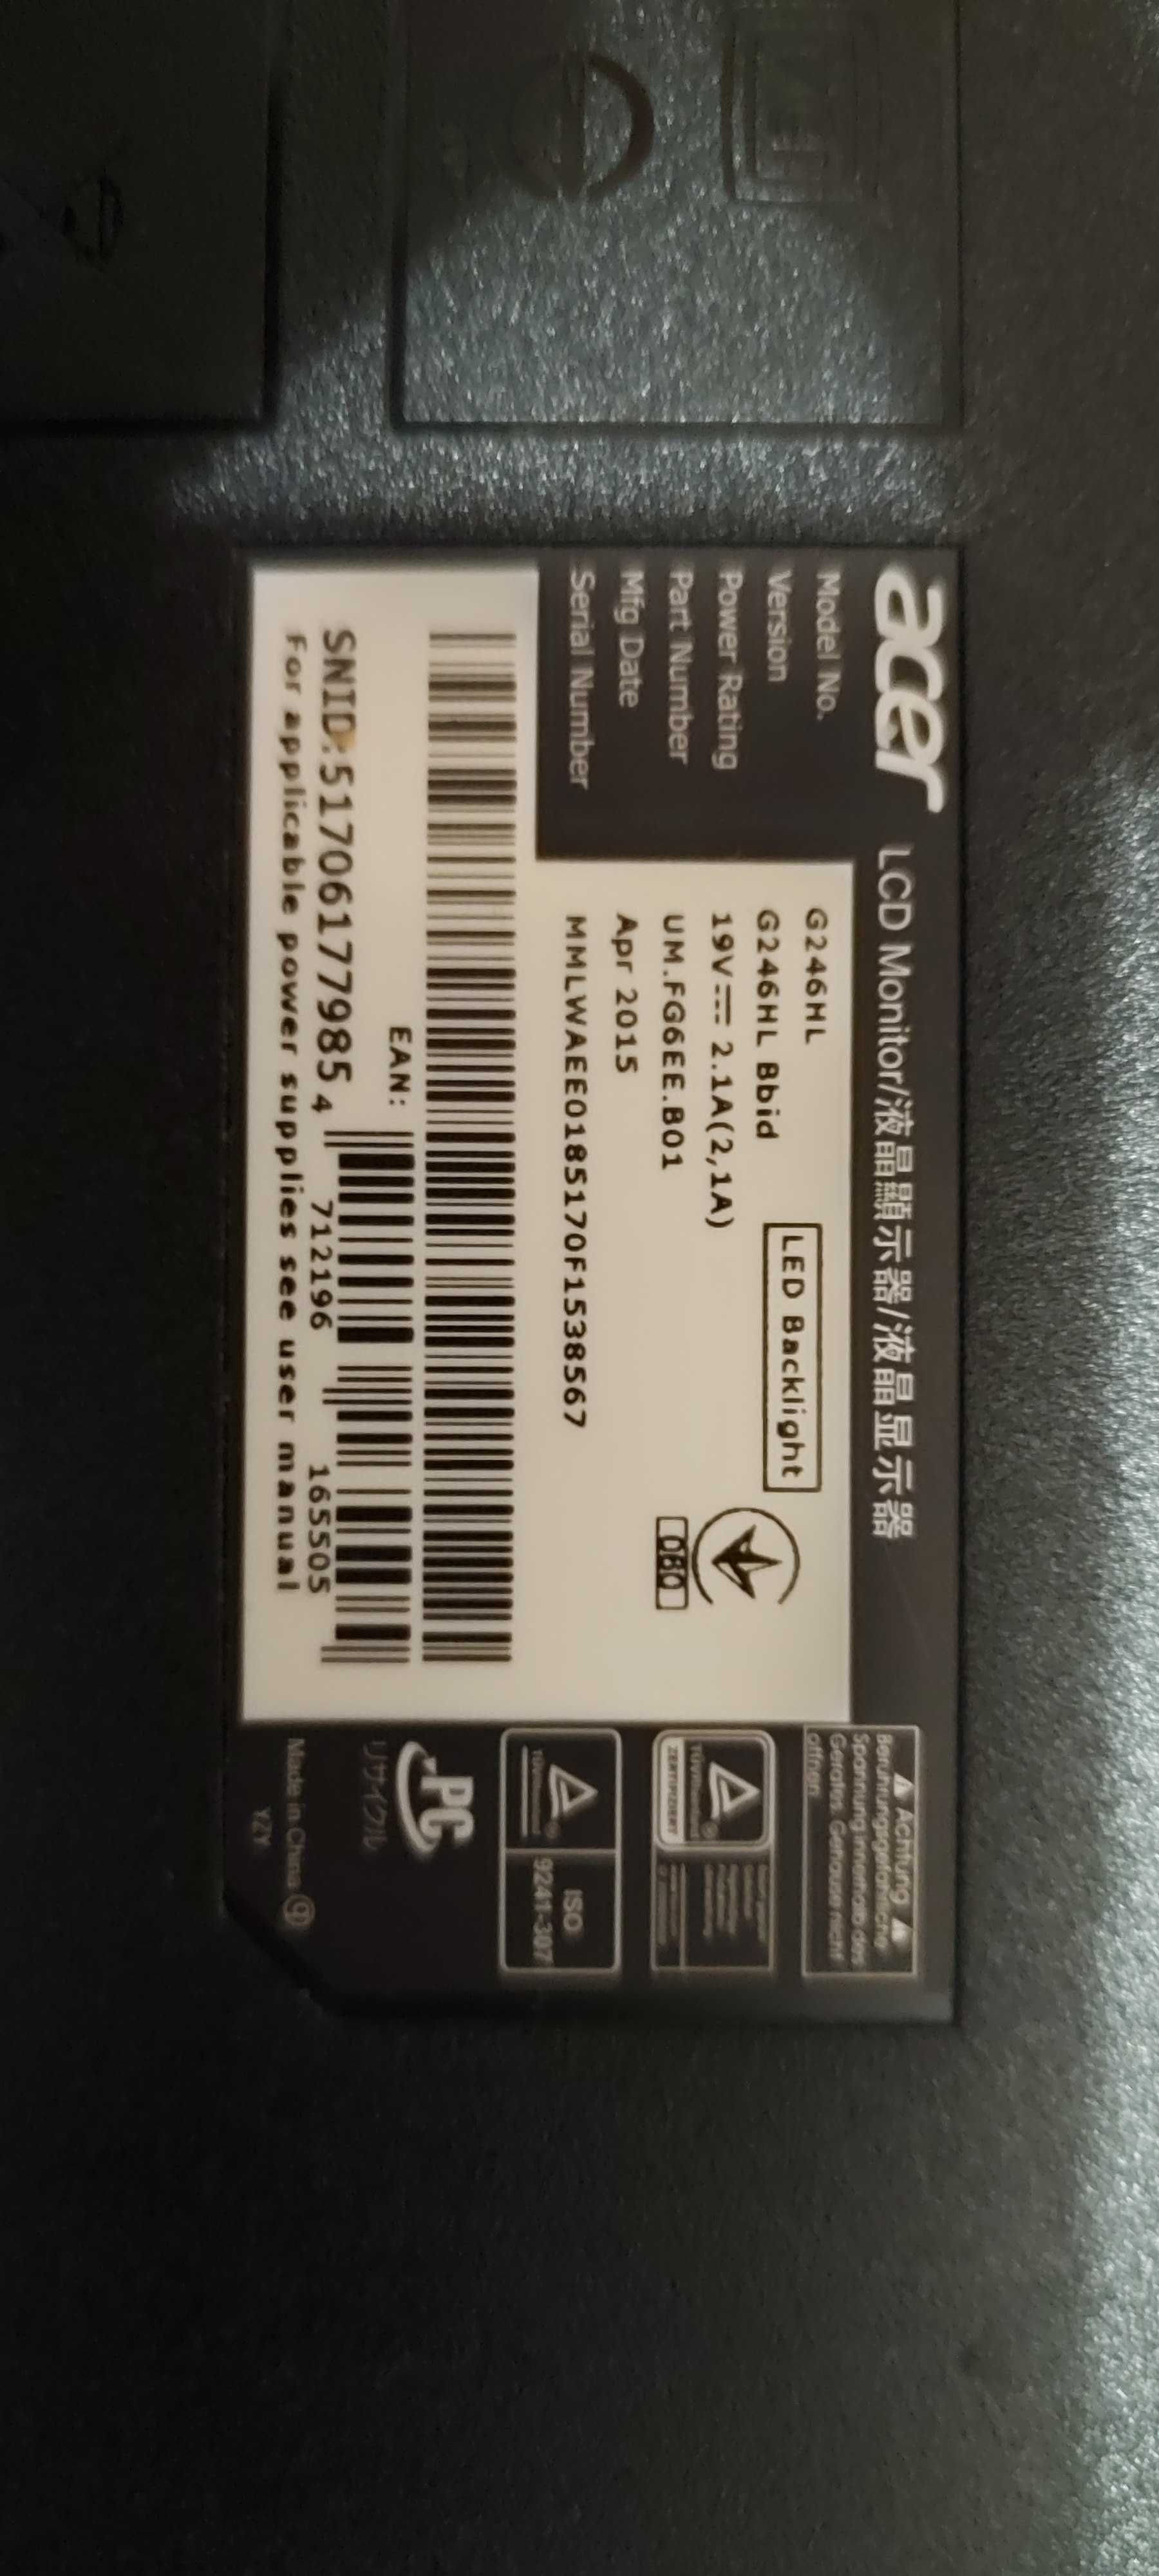 Монітор Acer LCD 24" Full HD (G246HL) Б/У